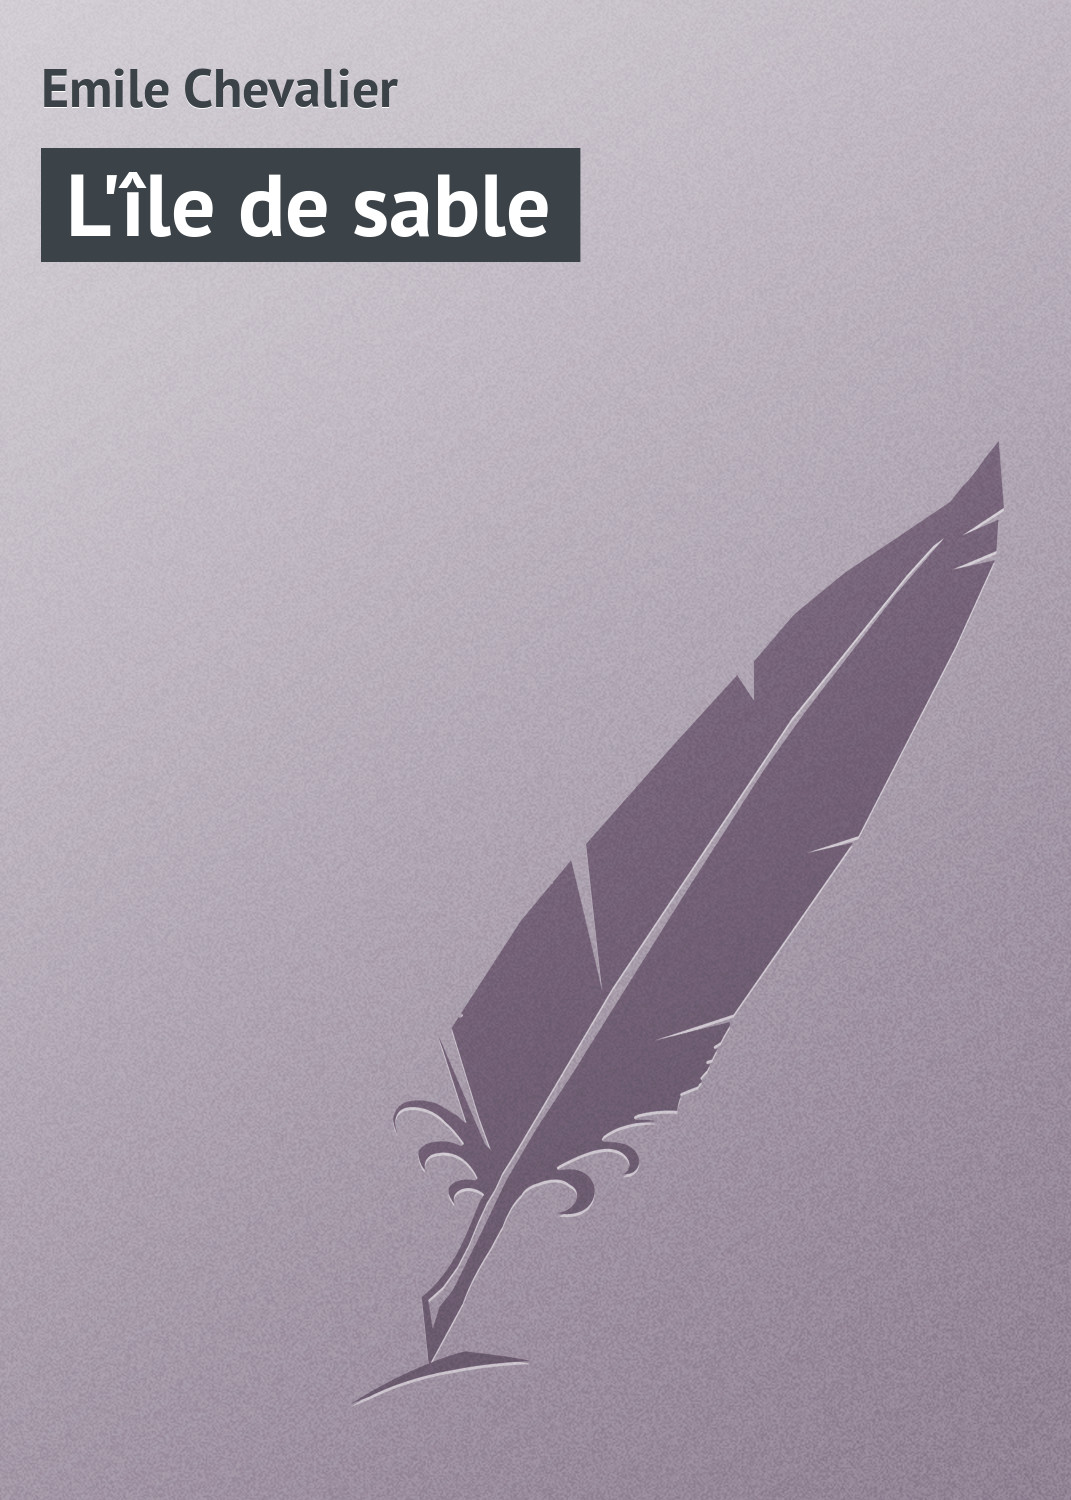 Книга L'île de sable из серии , созданная Emile Chevalier, может относится к жанру Зарубежная старинная литература, Зарубежная классика. Стоимость электронной книги L'île de sable с идентификатором 21105918 составляет 5.99 руб.